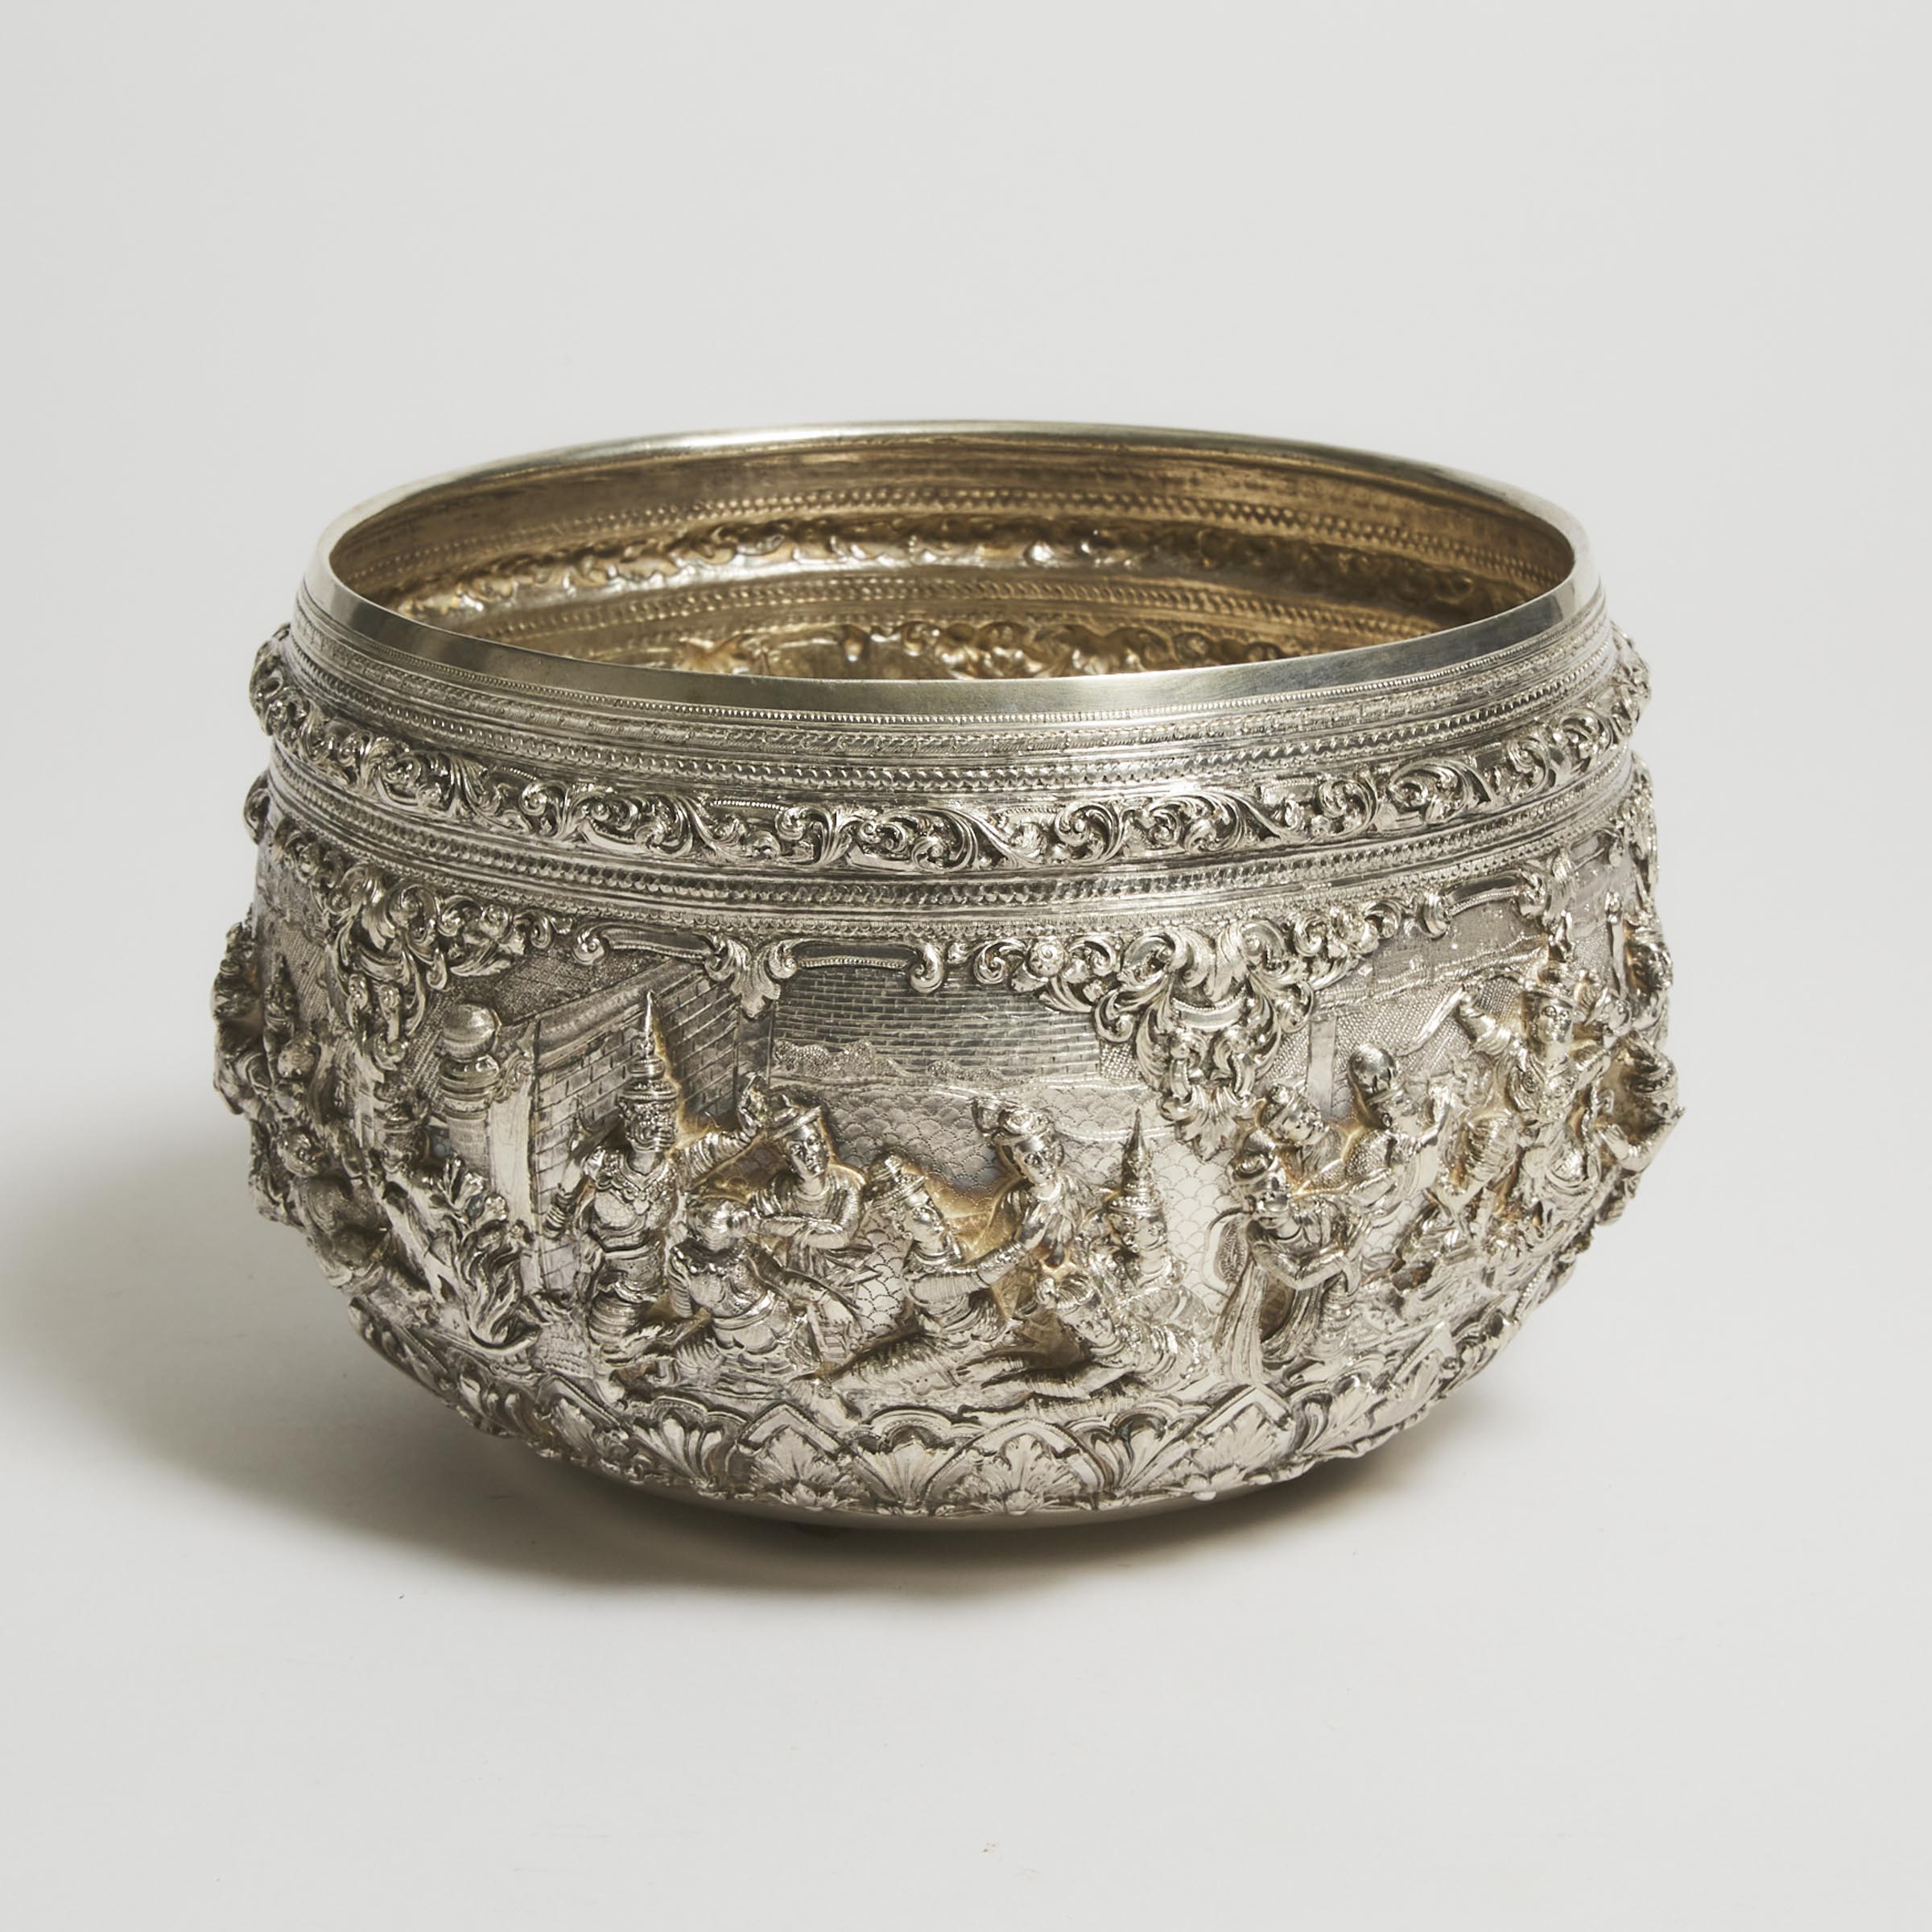 A Large Burmese Silver Bowl, Circa 1900